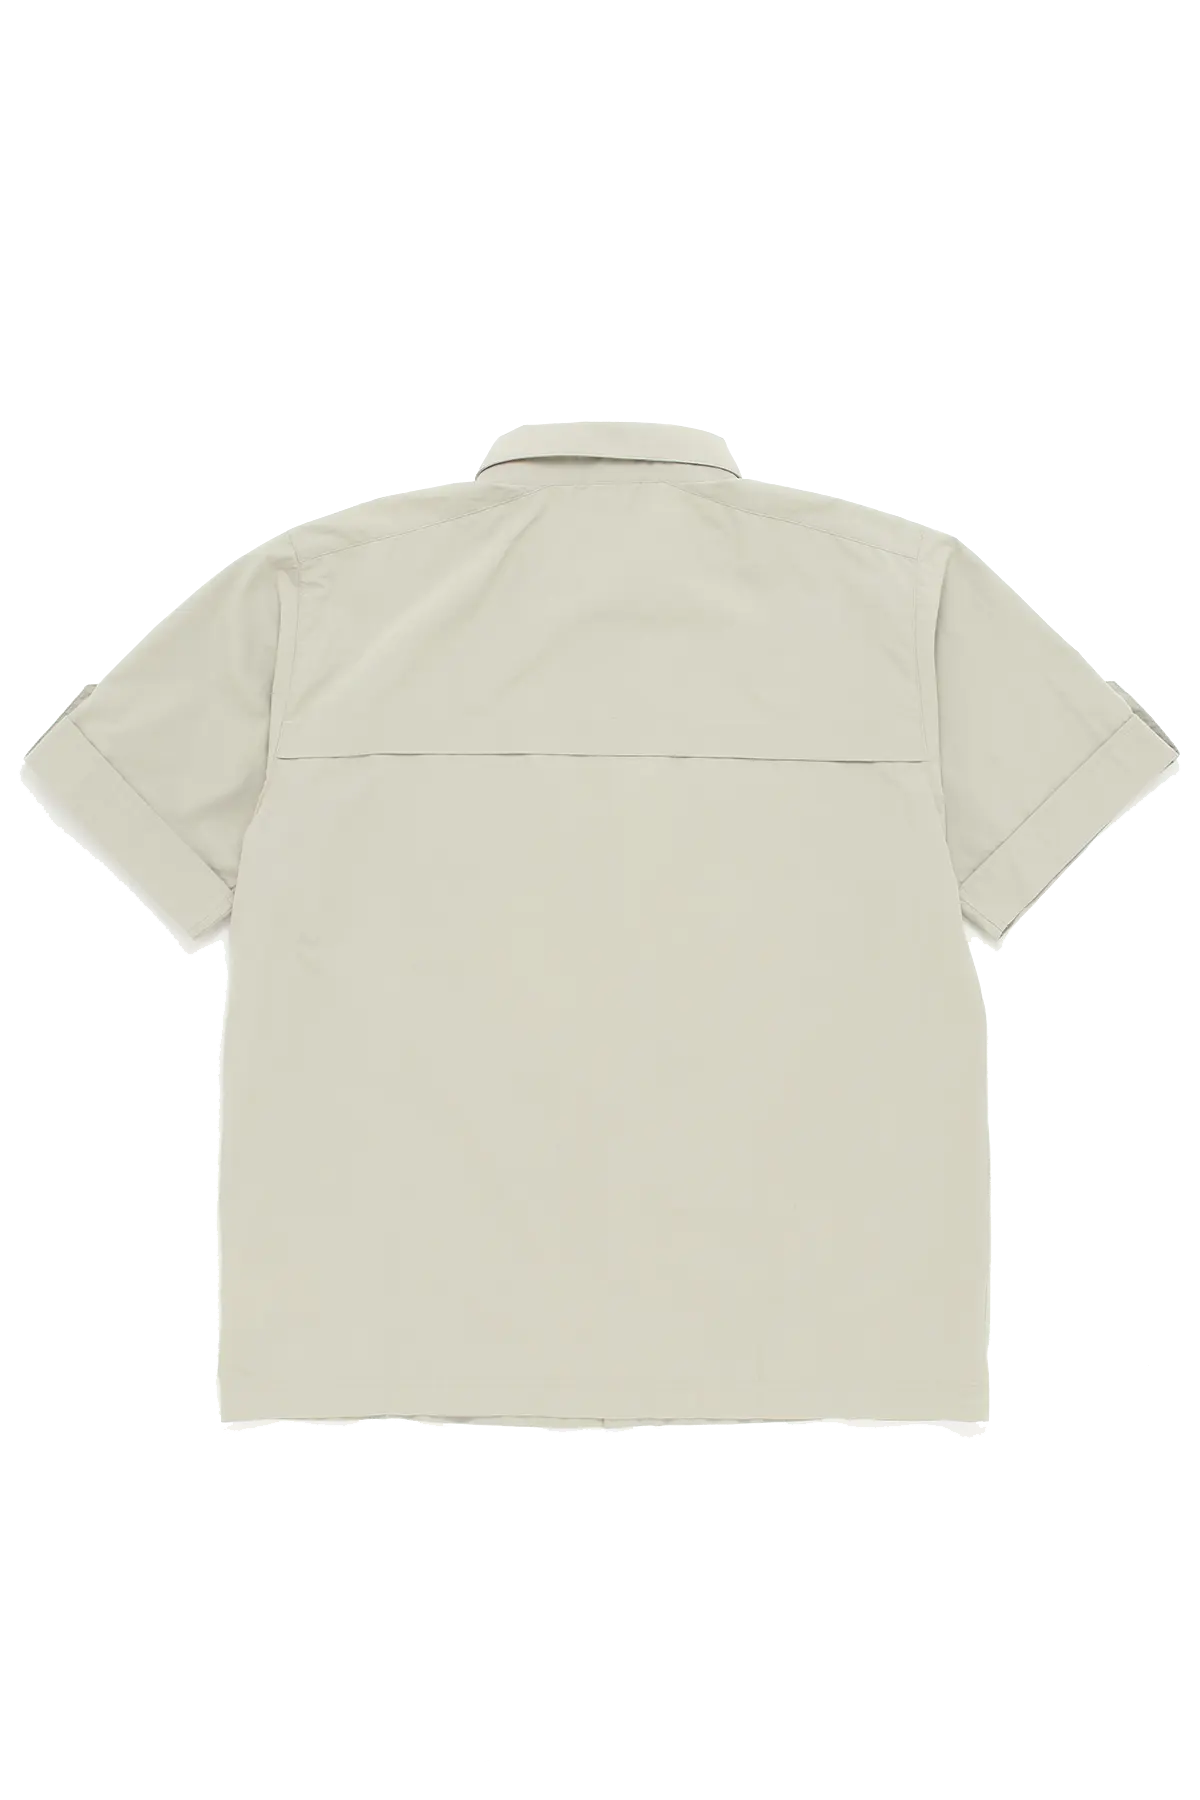 Adidas Safari Shirt